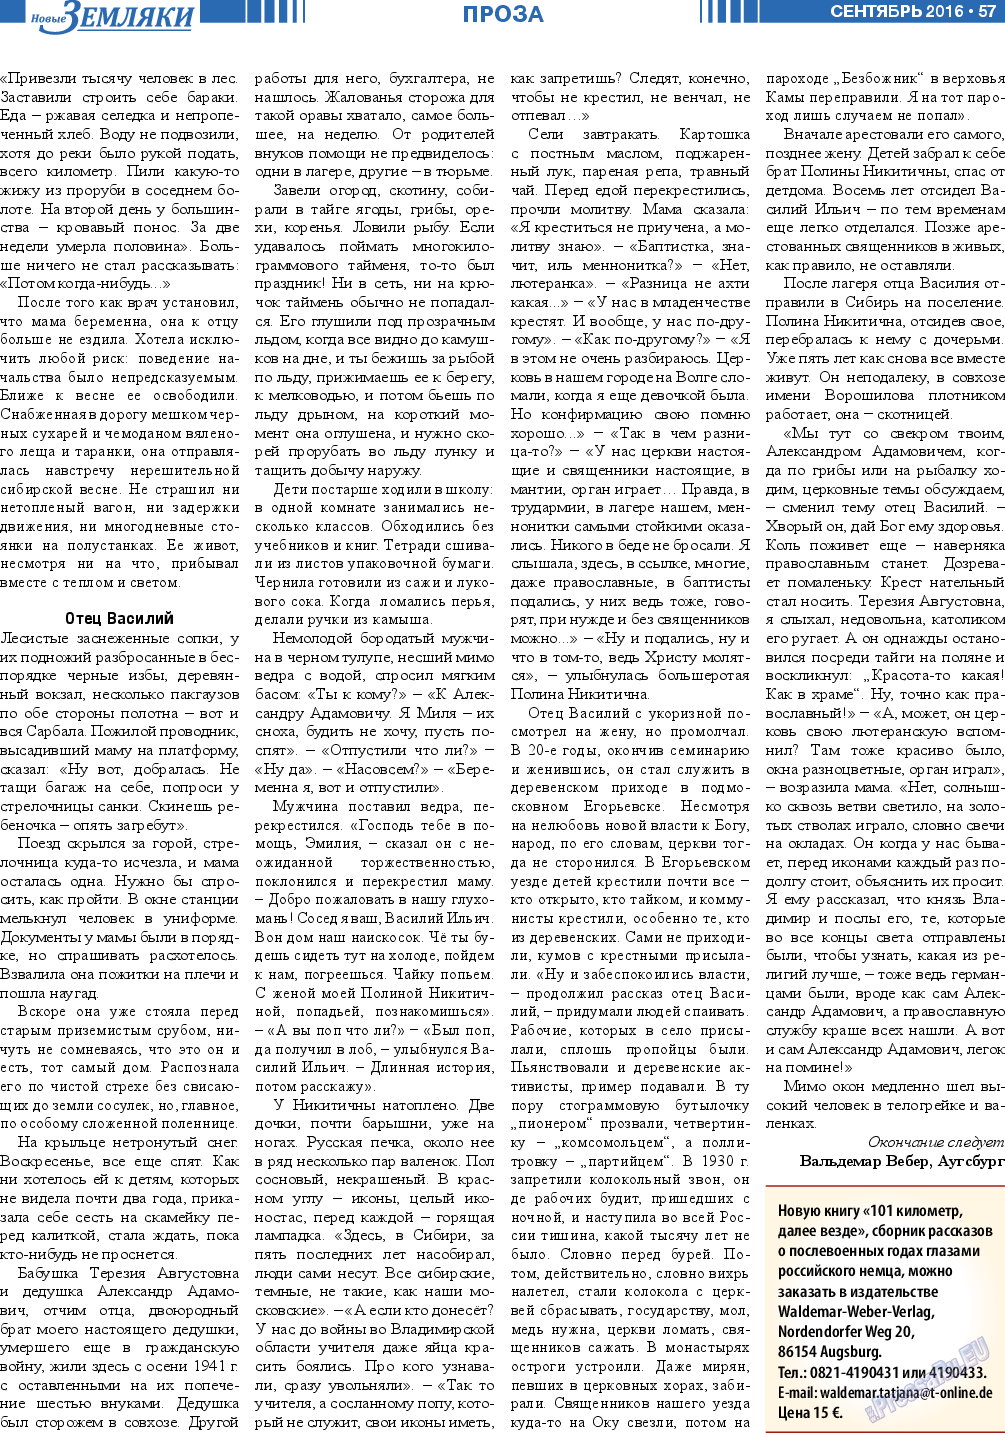 Новые Земляки (газета). 2016 год, номер 9, стр. 57